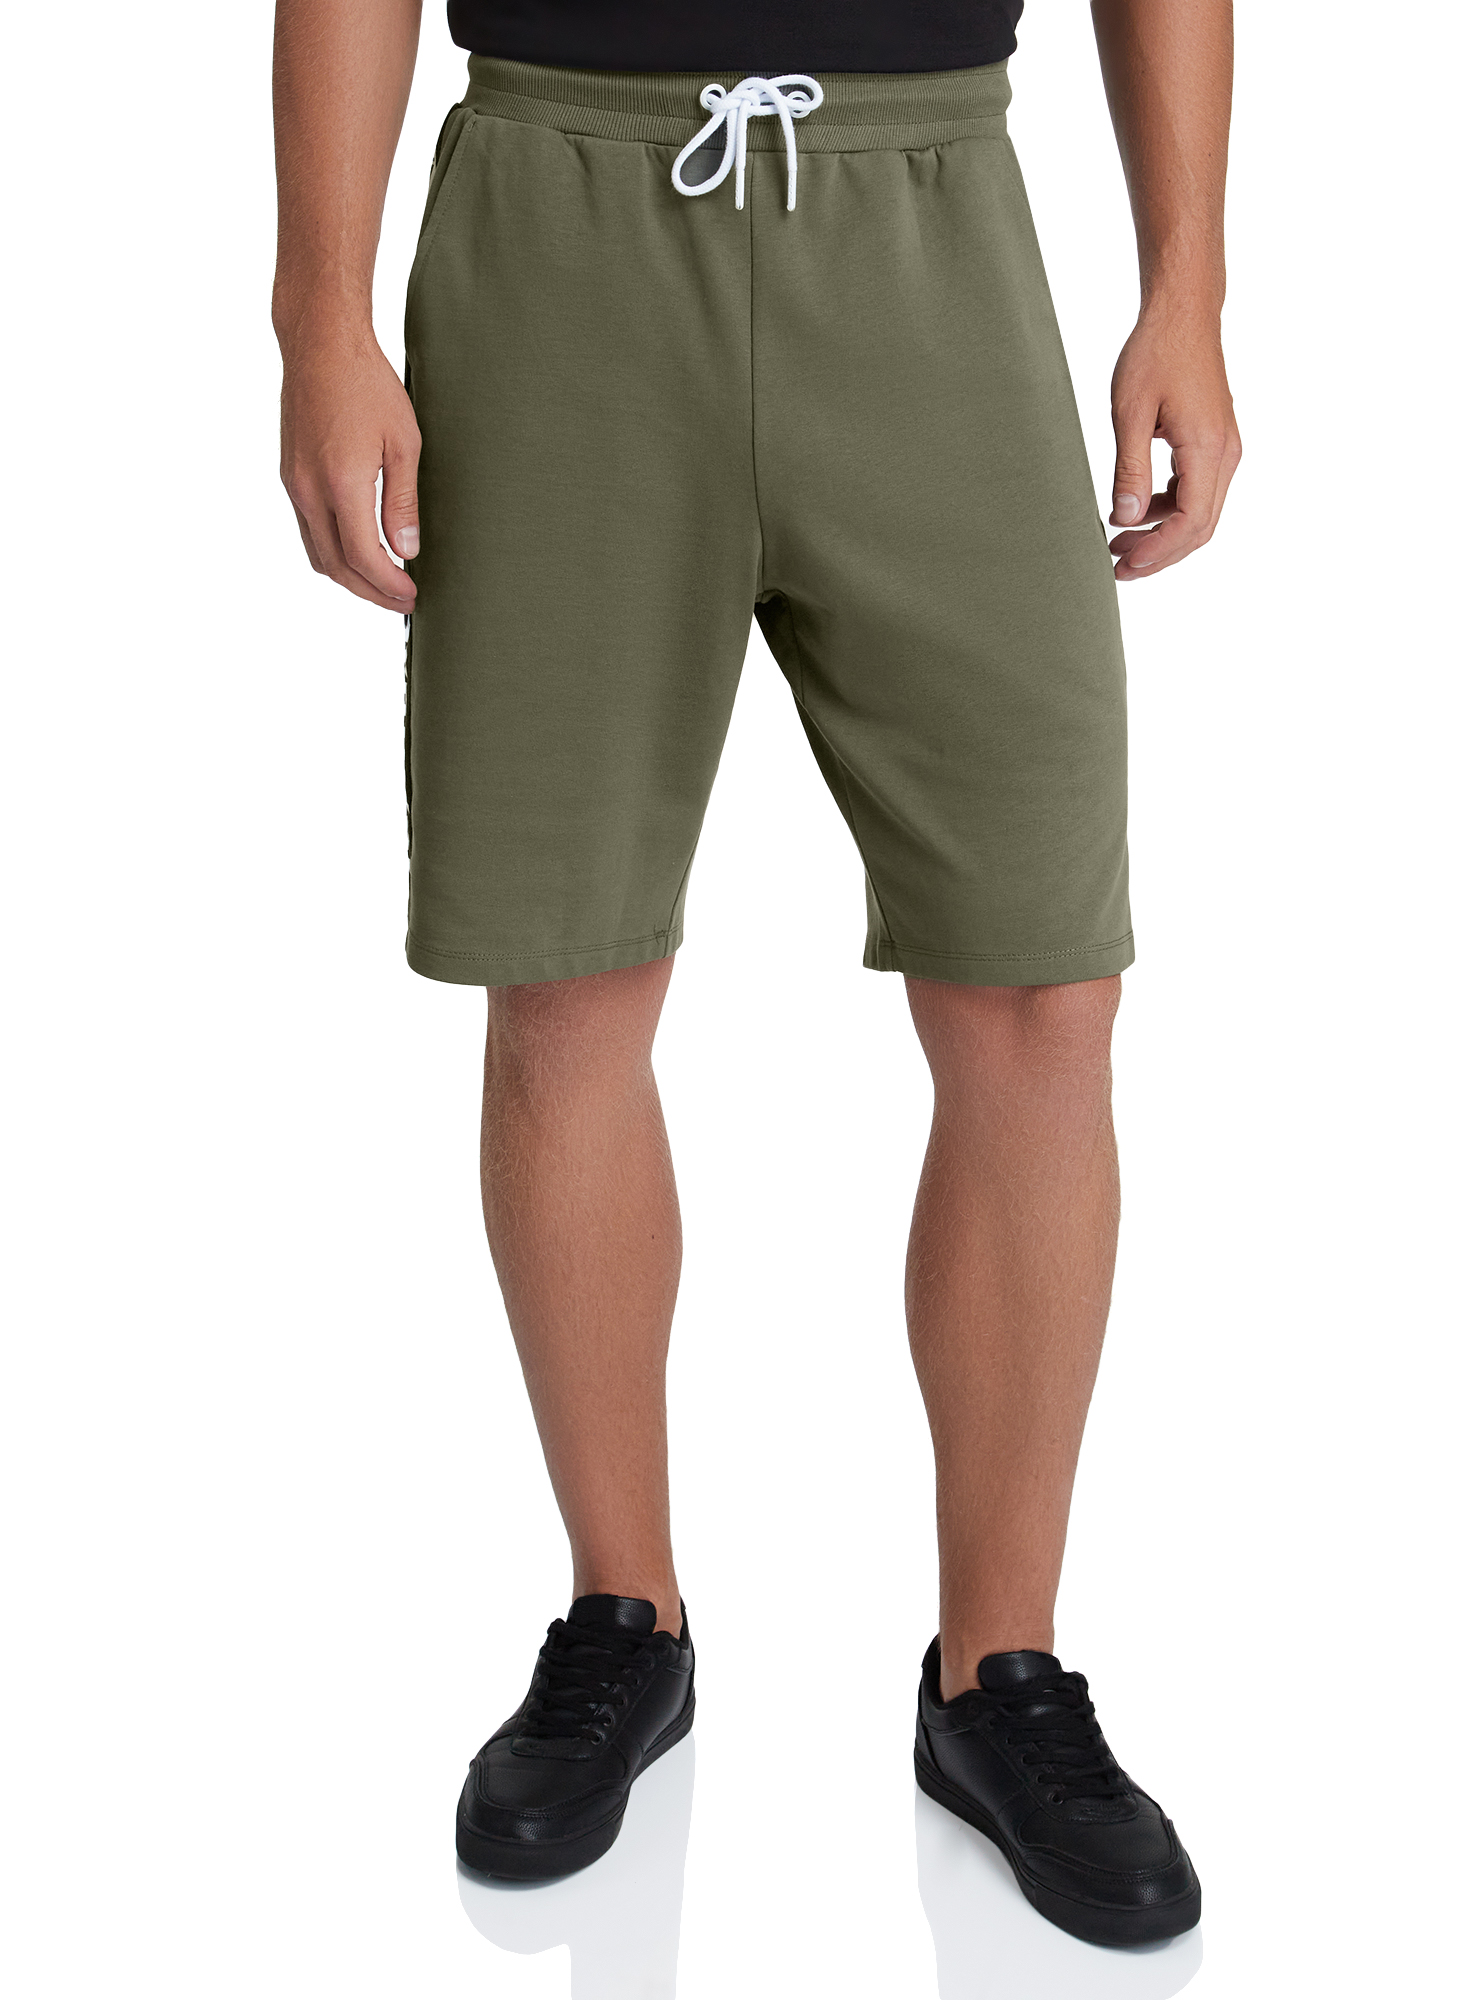 Повседневные шорты мужские oodji 5L270019I-1 зеленые XL